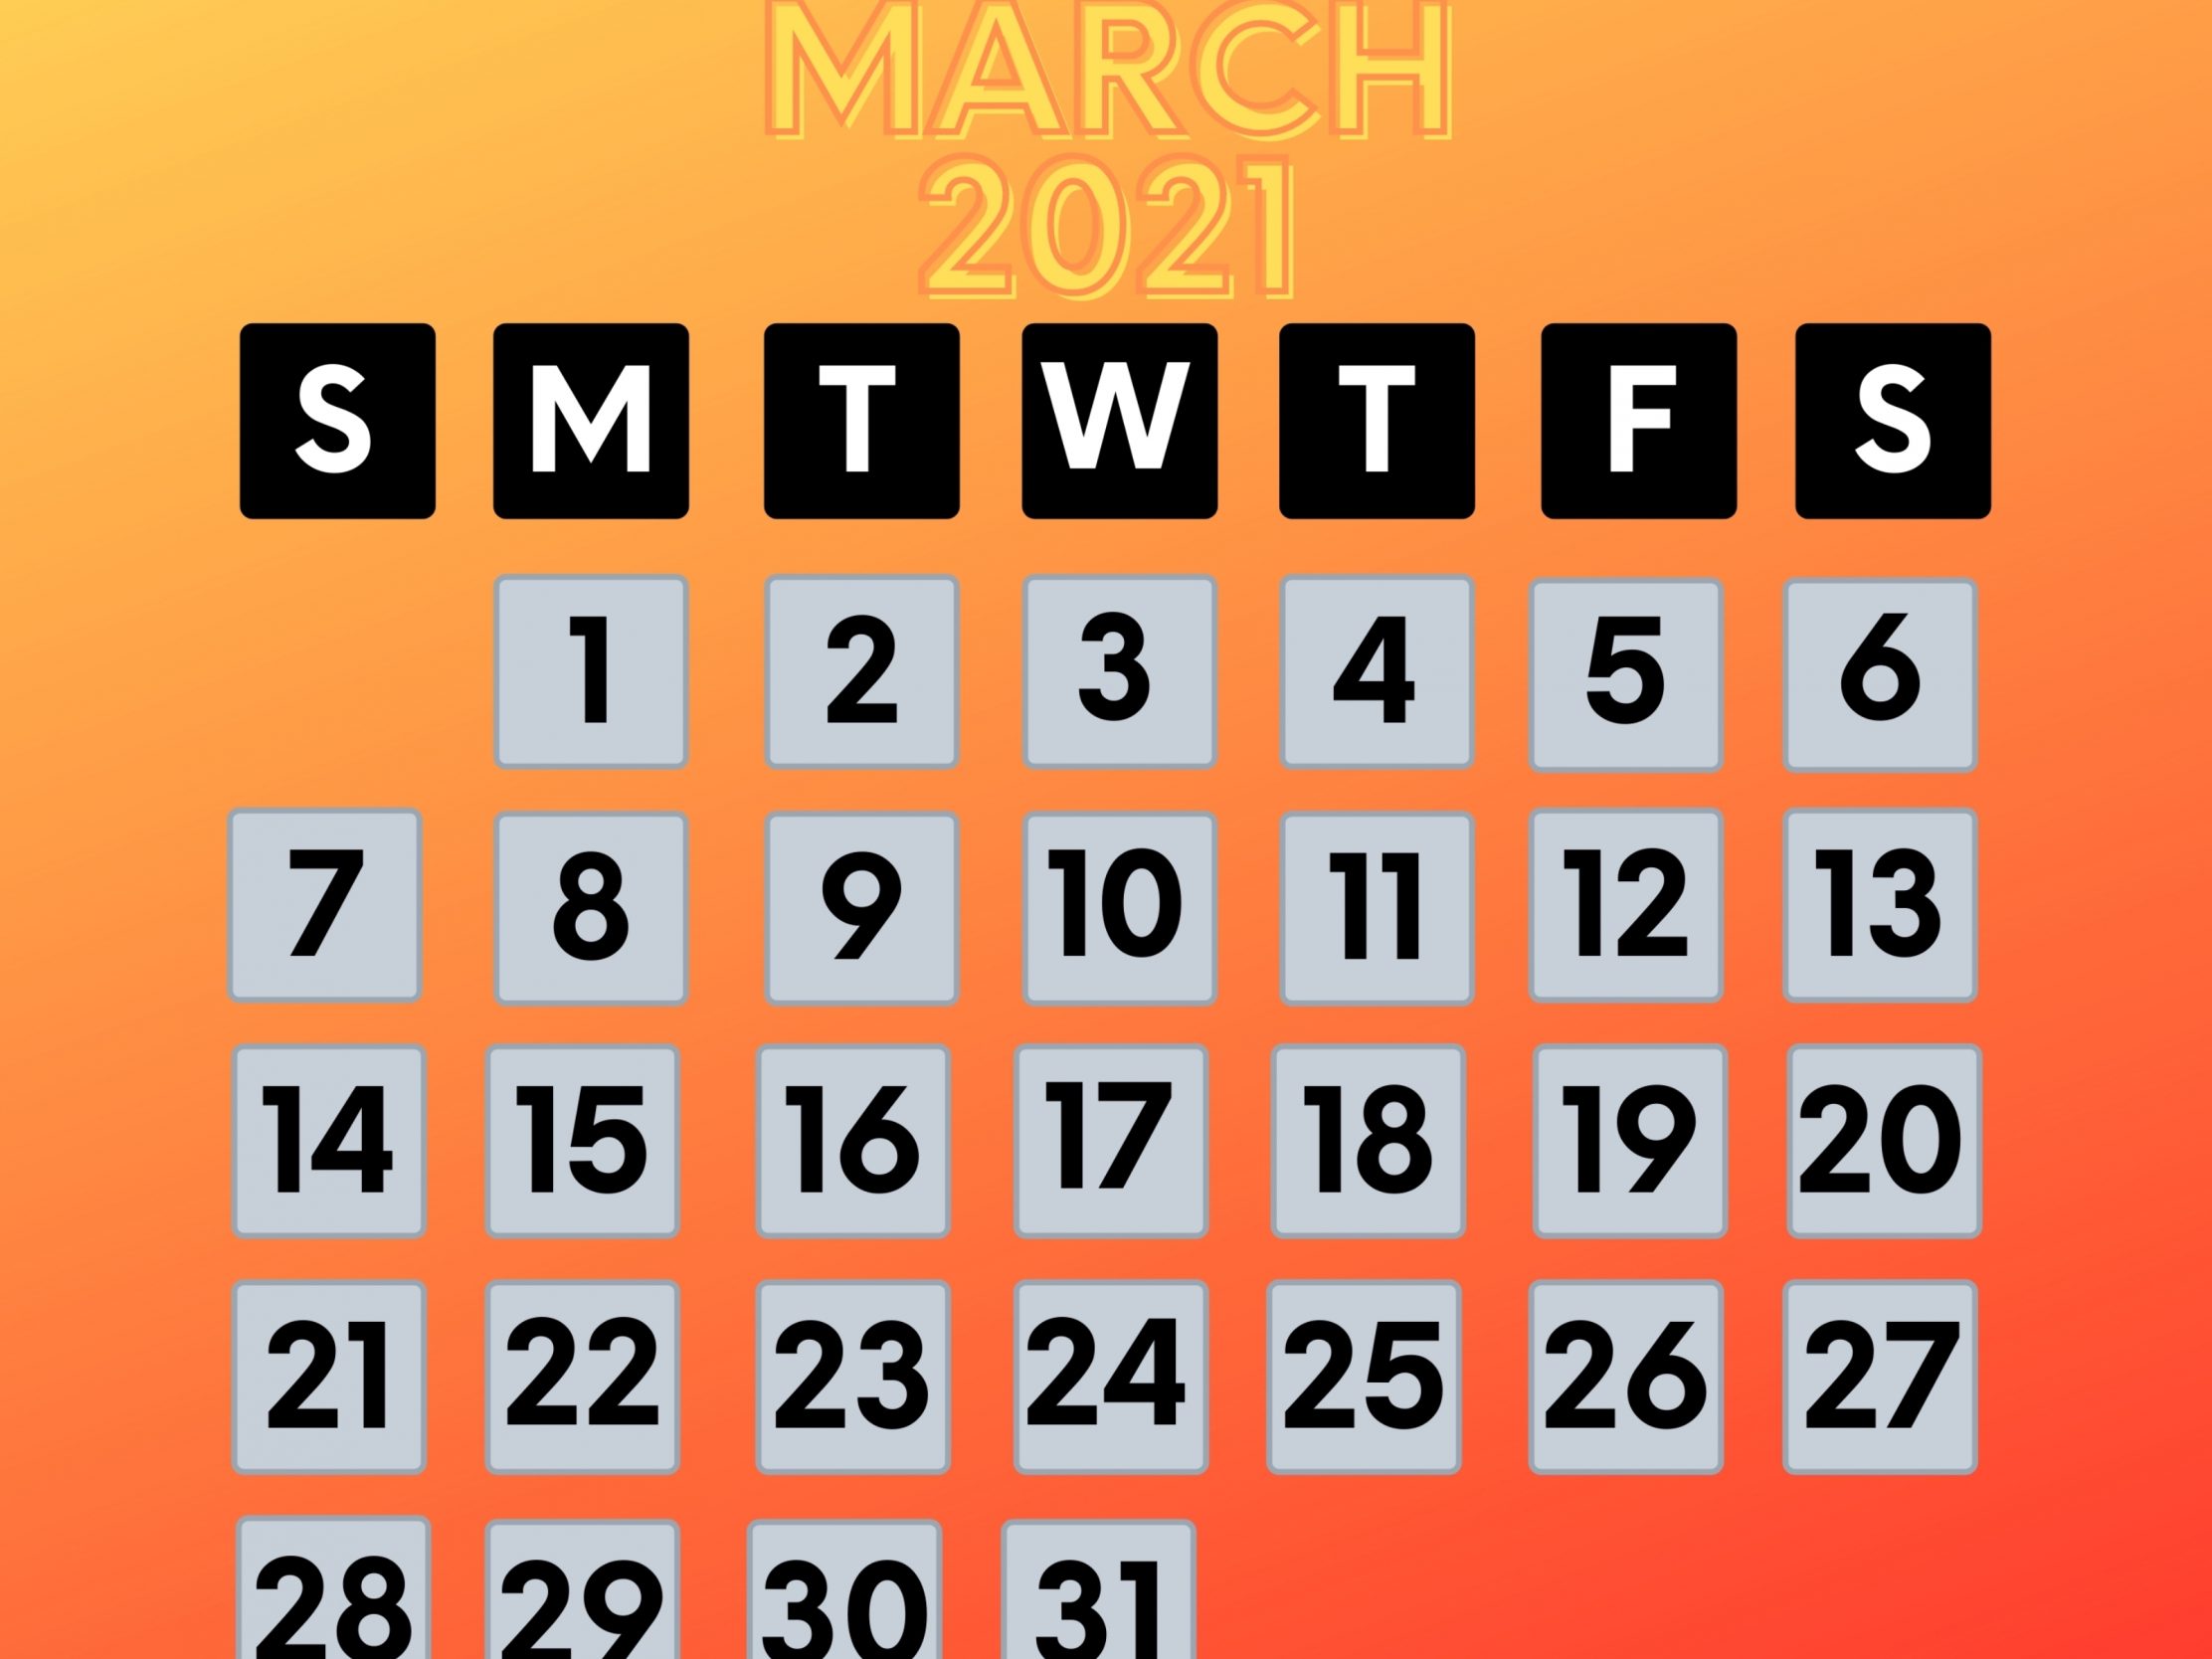 2224x1668 iPad Pro wallpapers March 2021 Calendar iPad Wallpaper 2224x1668 pixels resolution